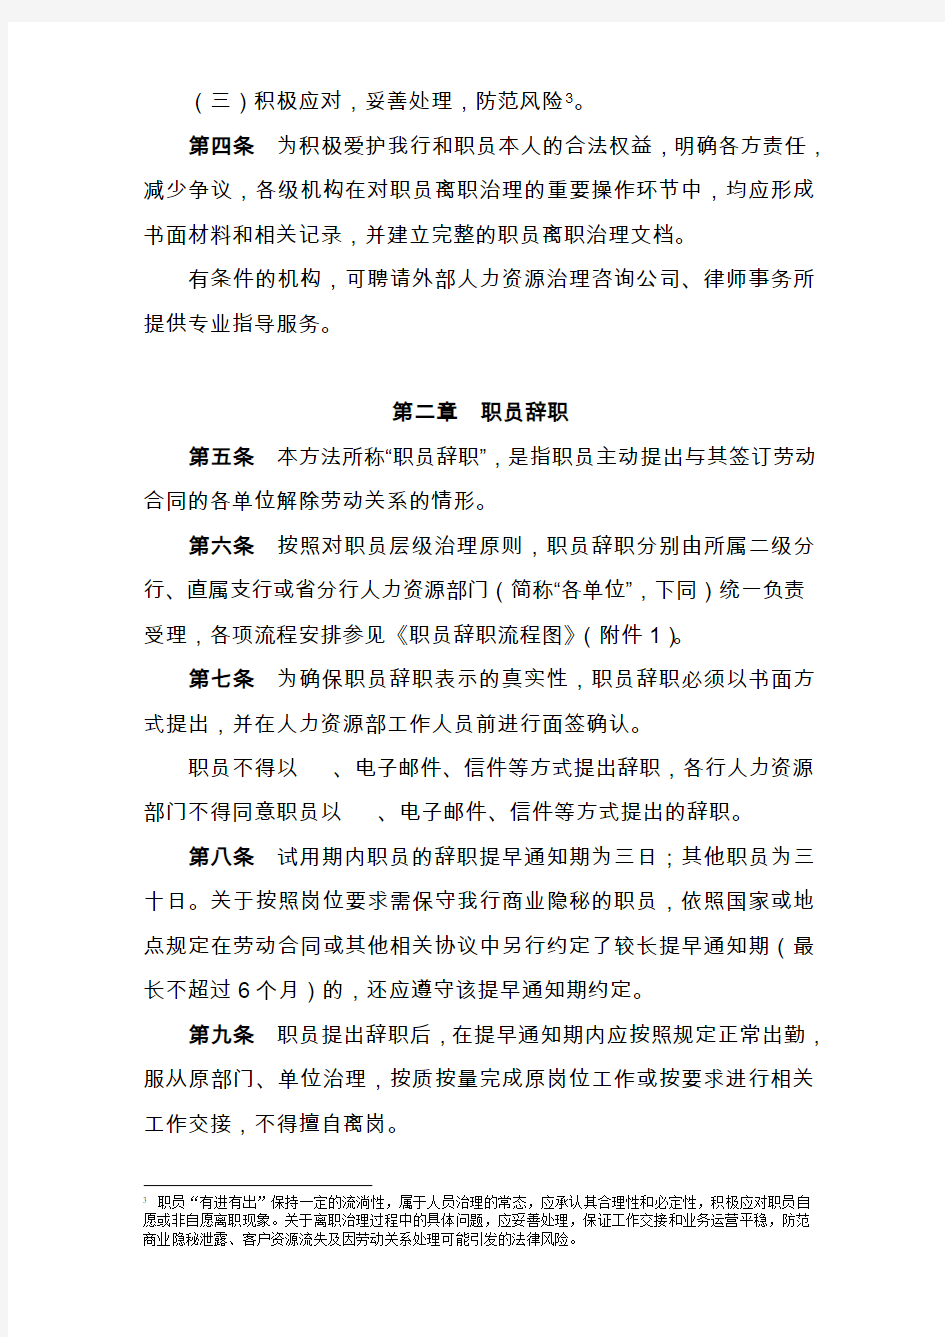 《中国银行股份有限公司湖南省分行员工离职管理办法实